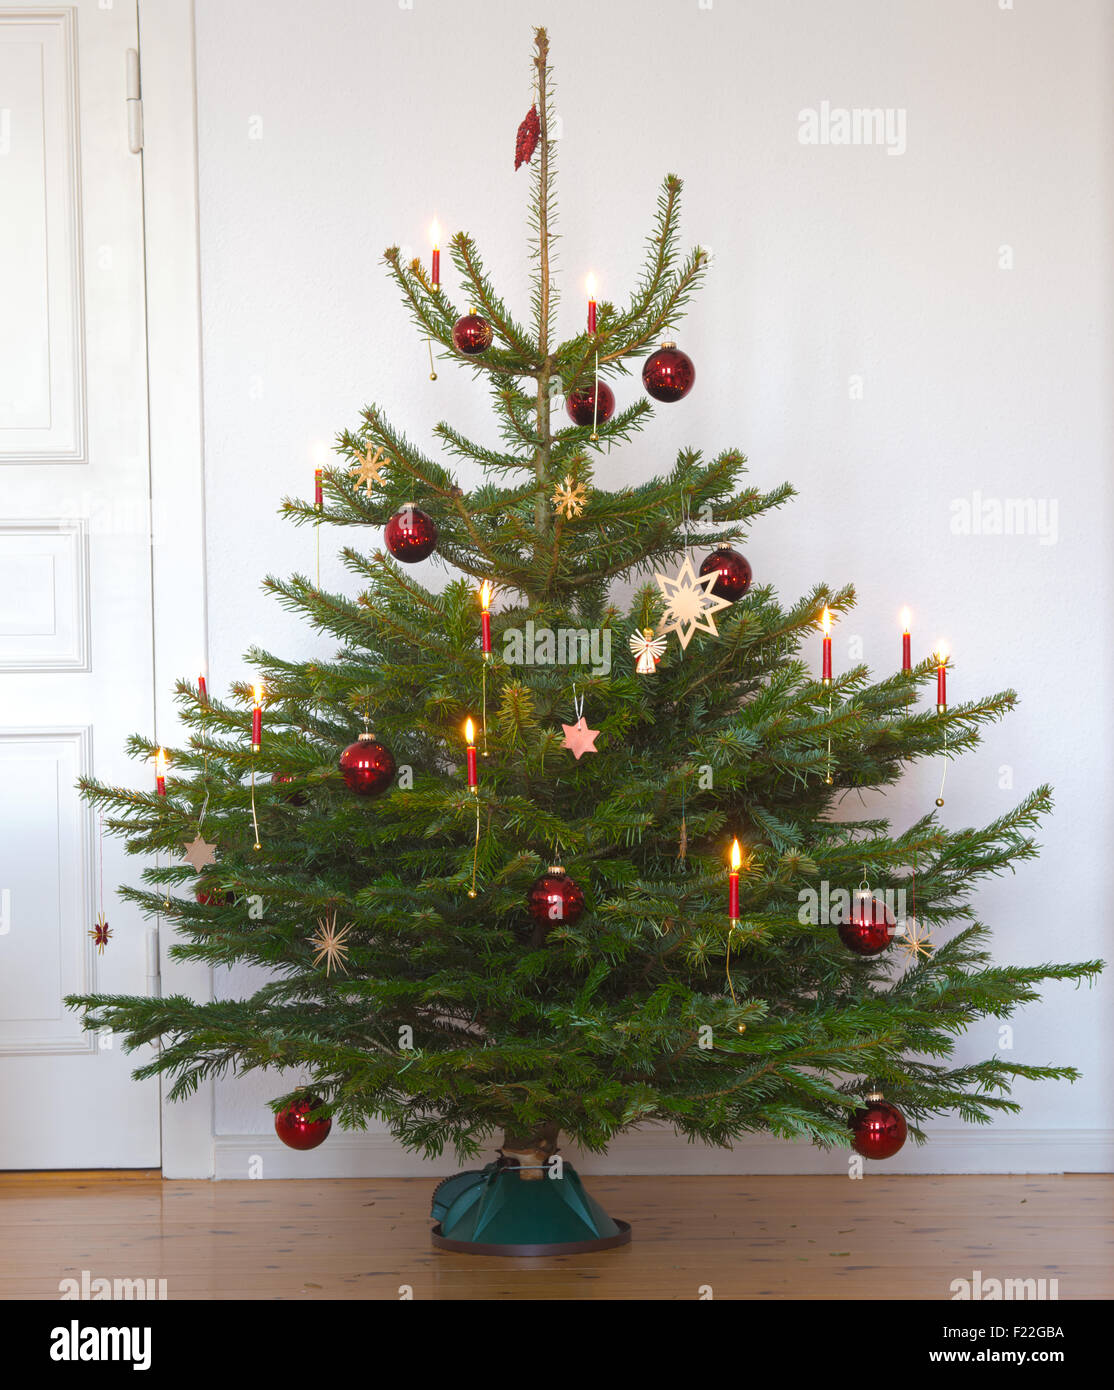 Weihnachtsbaum mit Kerzen Stock Photo